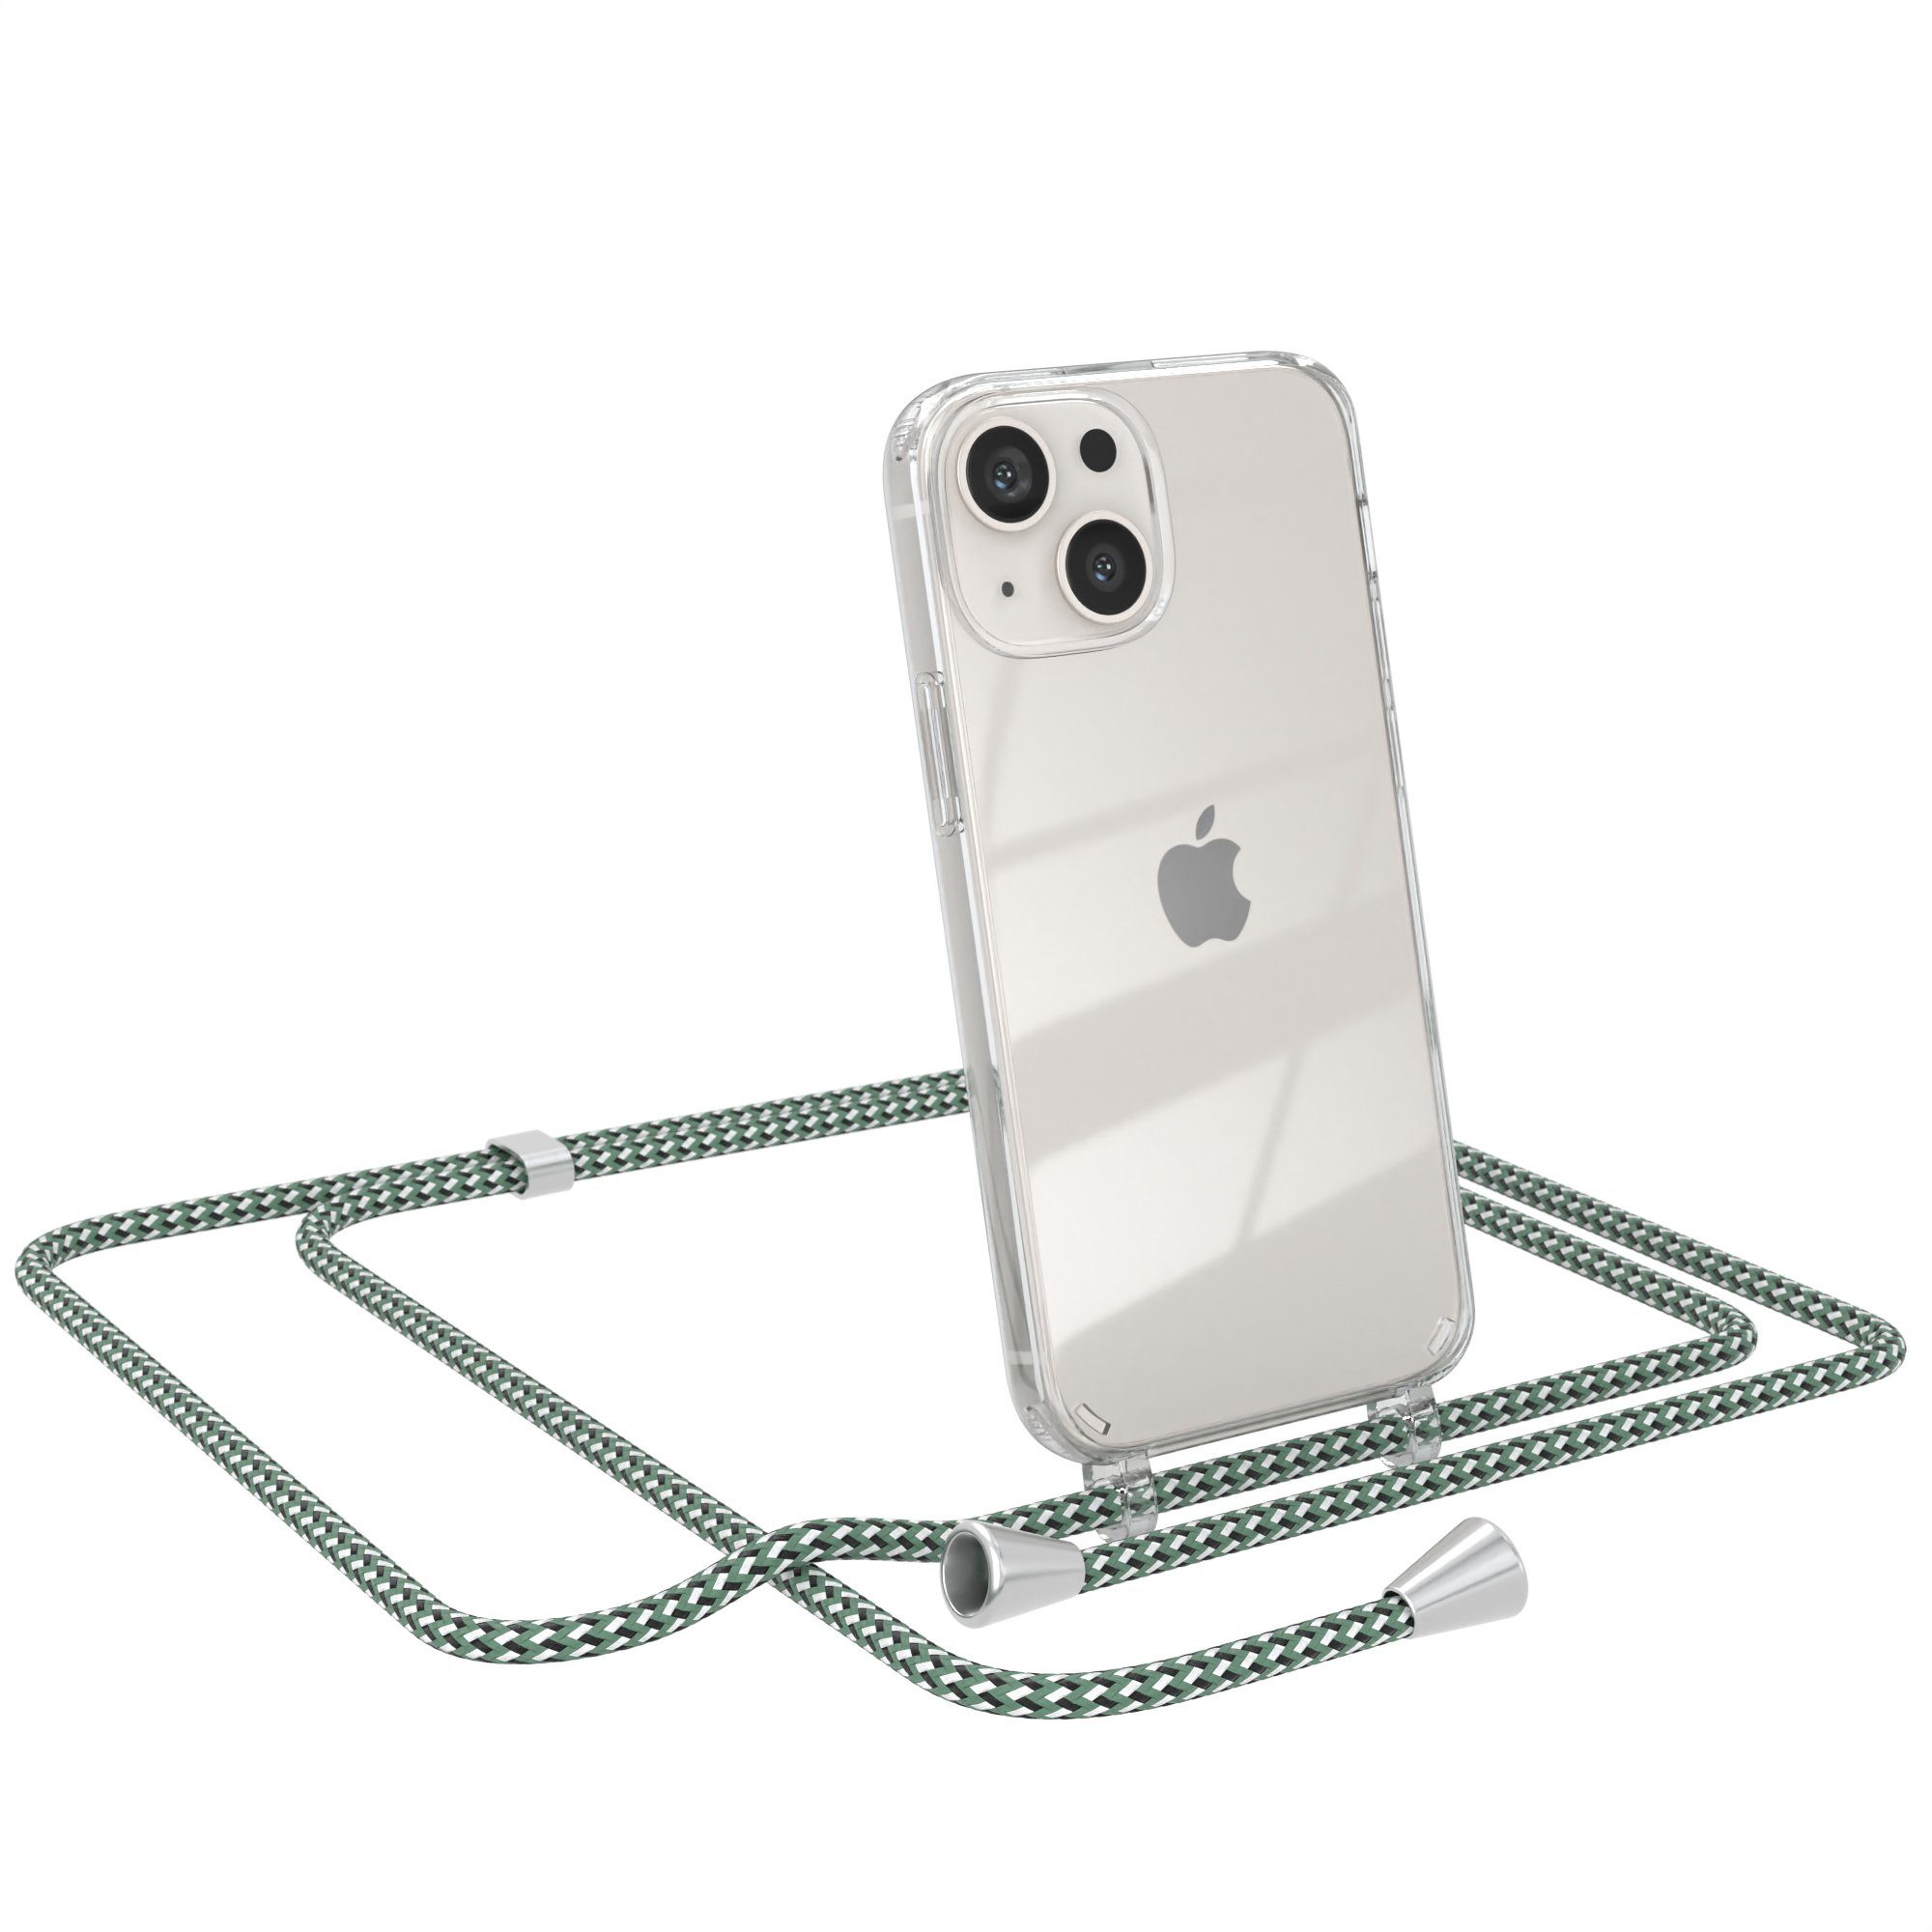 EAZY CASE Handykette Hülle mit Kette für Apple iPhone 13 Mini 5,4 Zoll, Kettenhülle zum Umhängen Tasche Cross Bag Handykordel Cover Grün Weiß